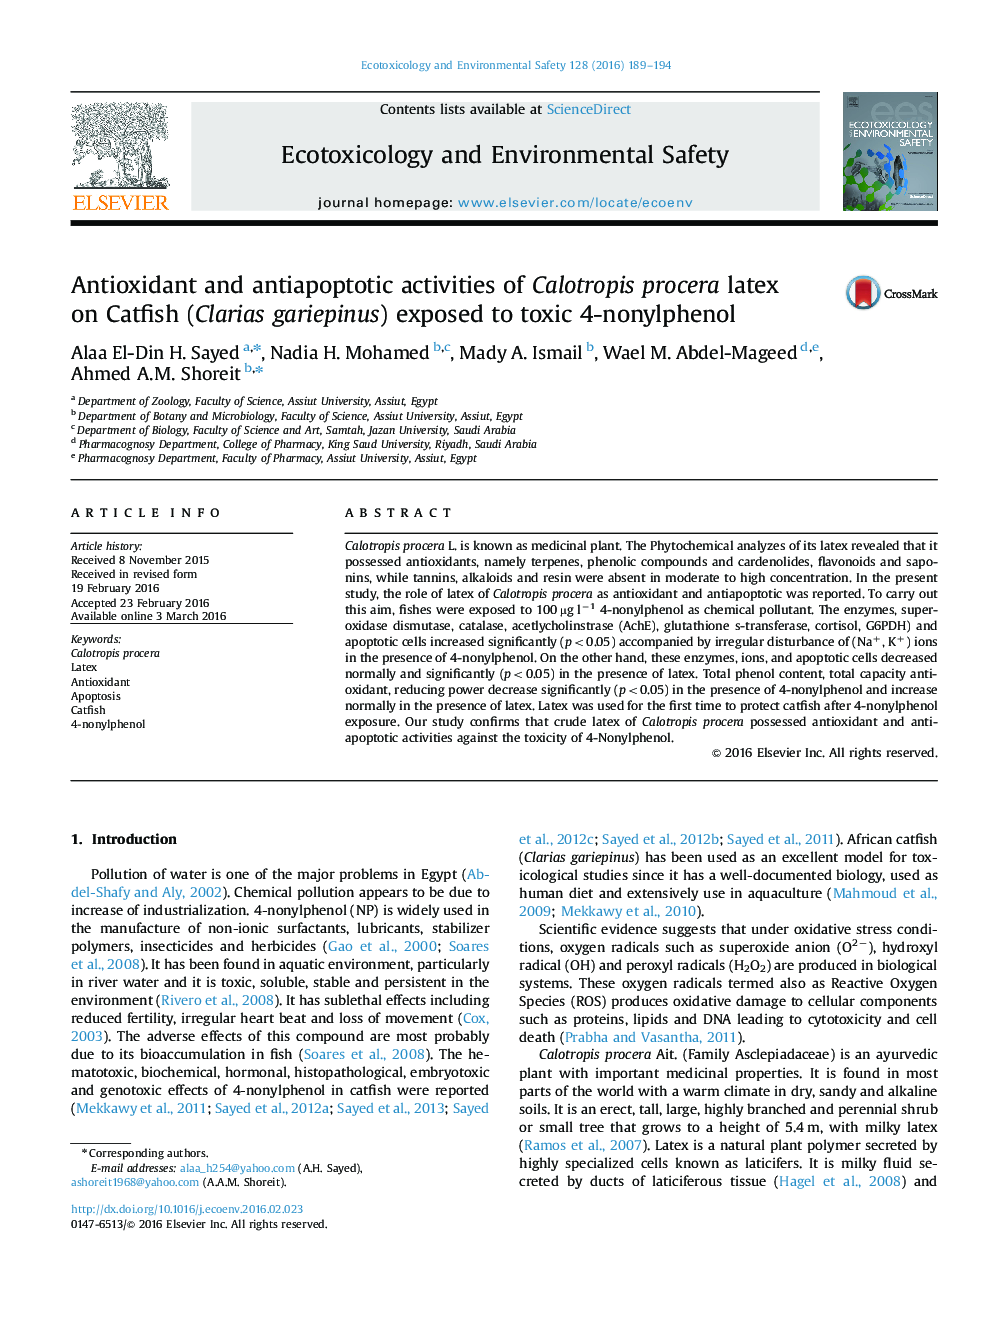 فعالیت های آنتی اکسیدانی وآنتی از استبرق لاتکس بر روی گربه ماهی (Clarias gariepinus) در معرض سمی 4-nonylphenol